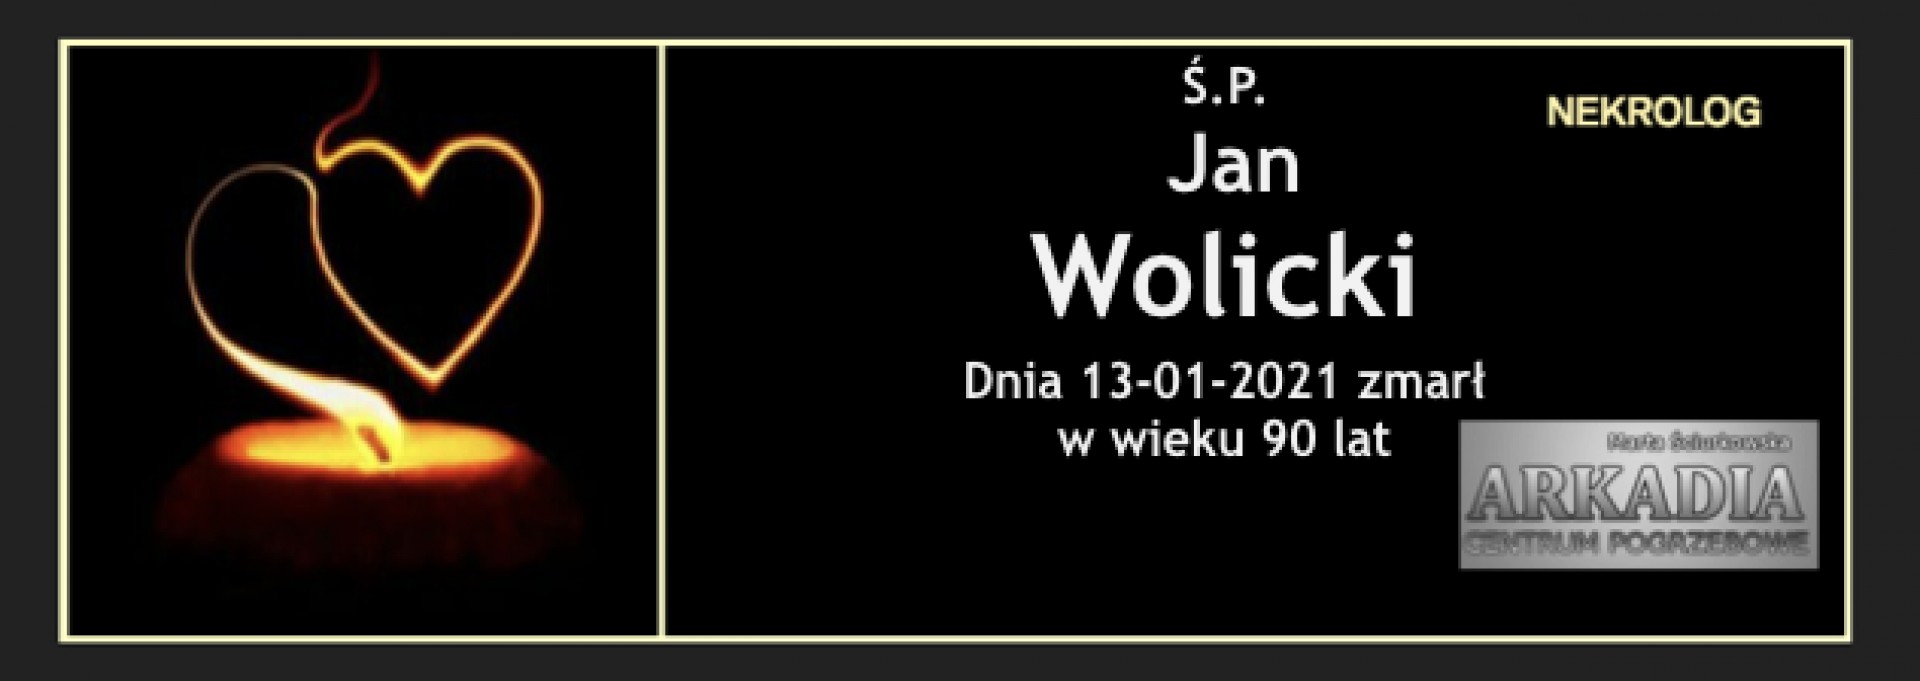 Ś.P. Jan Wolicki